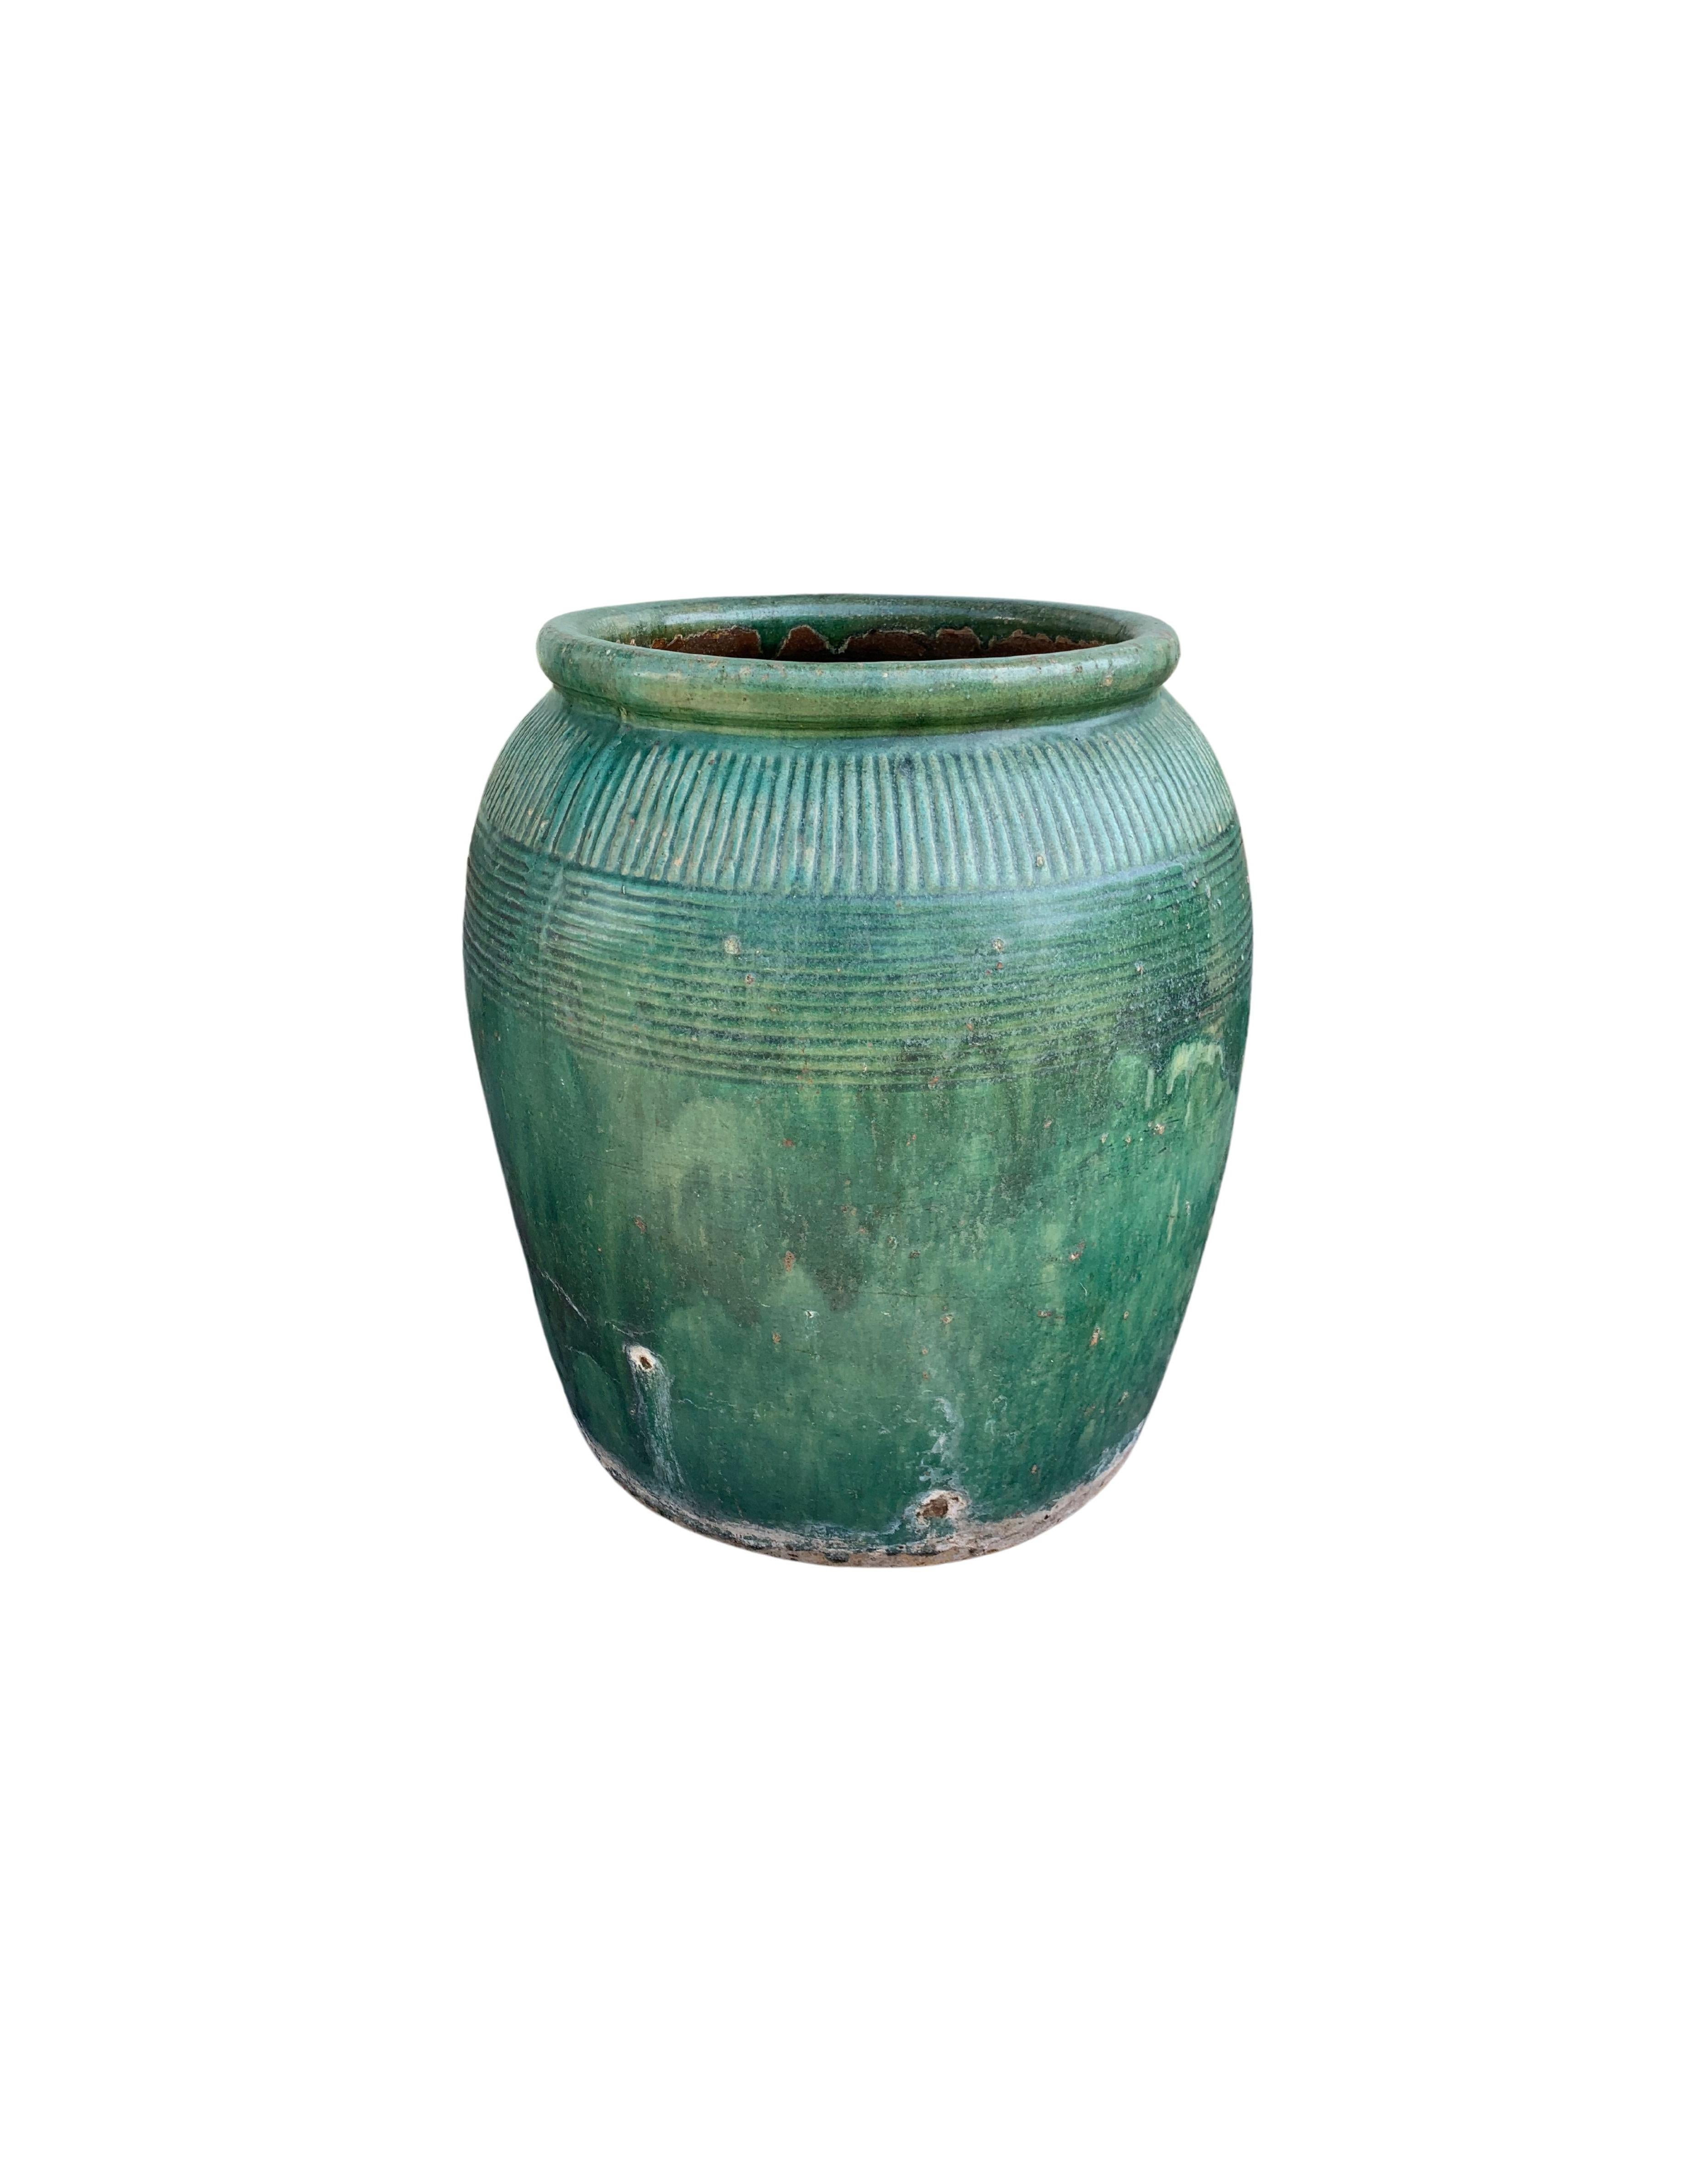 Cette jarre en céramique chinoise vernissée datant du début du XIXe siècle était autrefois utilisée pour la production de sauce soja. Il présente une merveilleuse finition émaillée verte et une surface extérieure qui présente une texture côtelée. Un